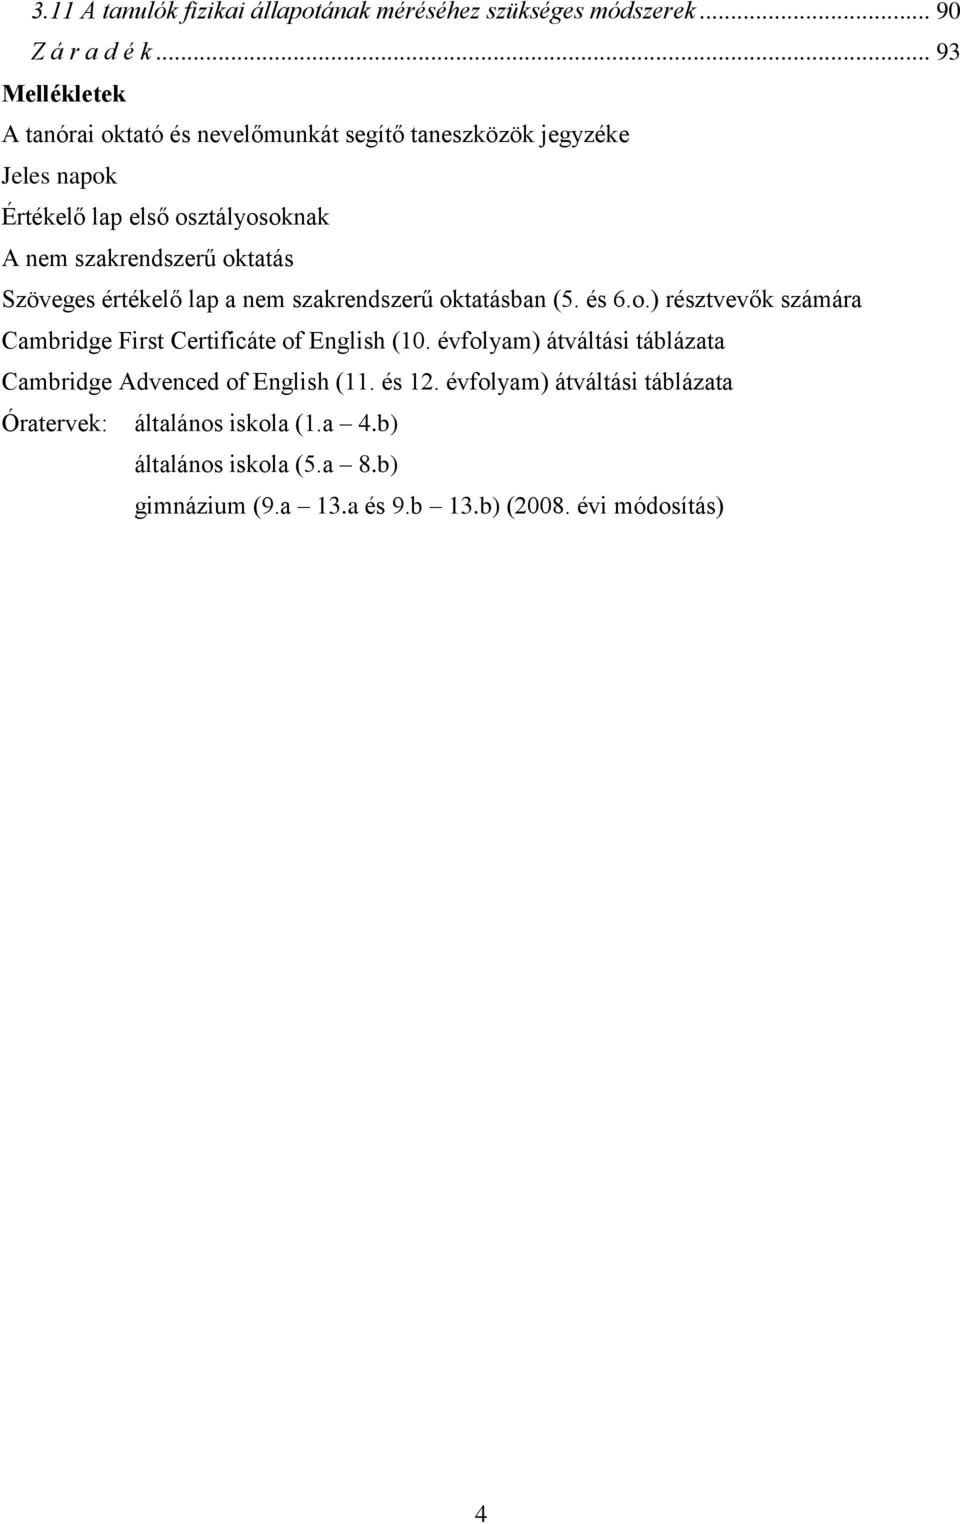 oktatás Szöveges értékelő lap a nem szakrendszerű oktatásban (5. és 6.o.) résztvevők számára Cambridge First Certificáte of English (10.